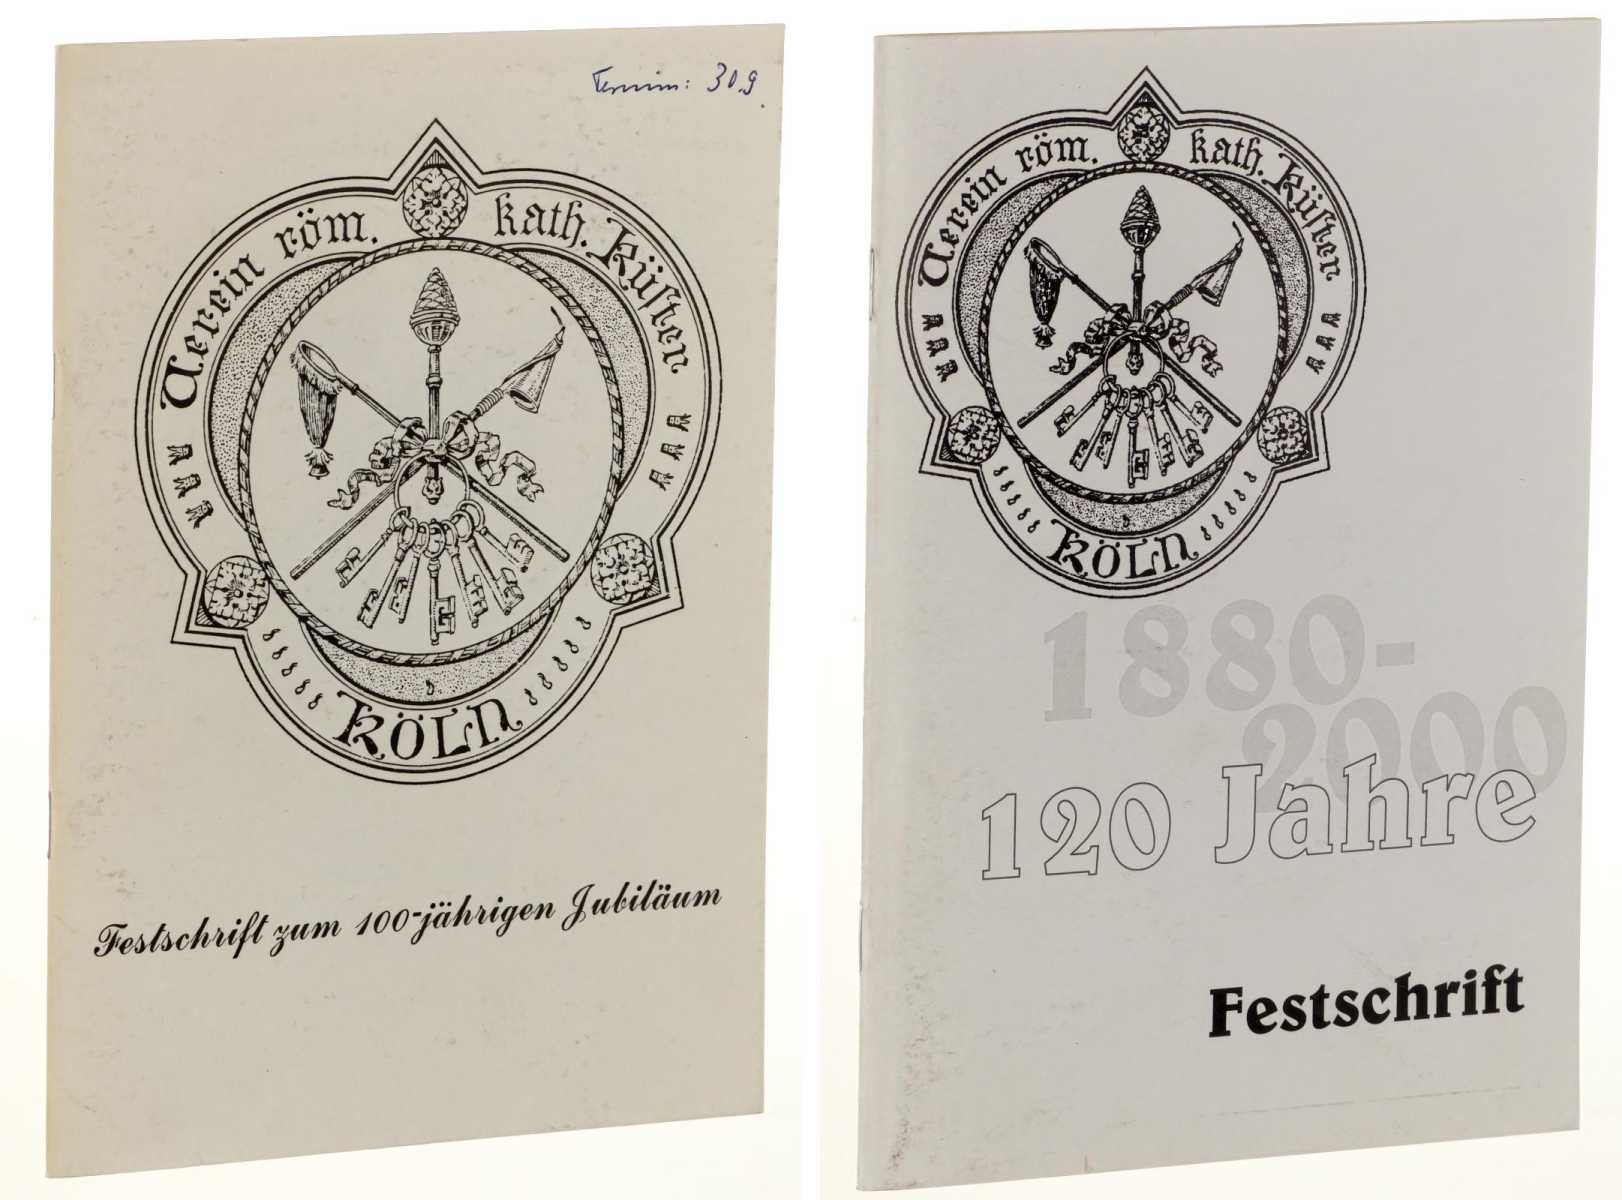   Festschrift zum 100-jährigen Jubiläum. Verein röm.kath. Küster, Köln. 1880-1980. 